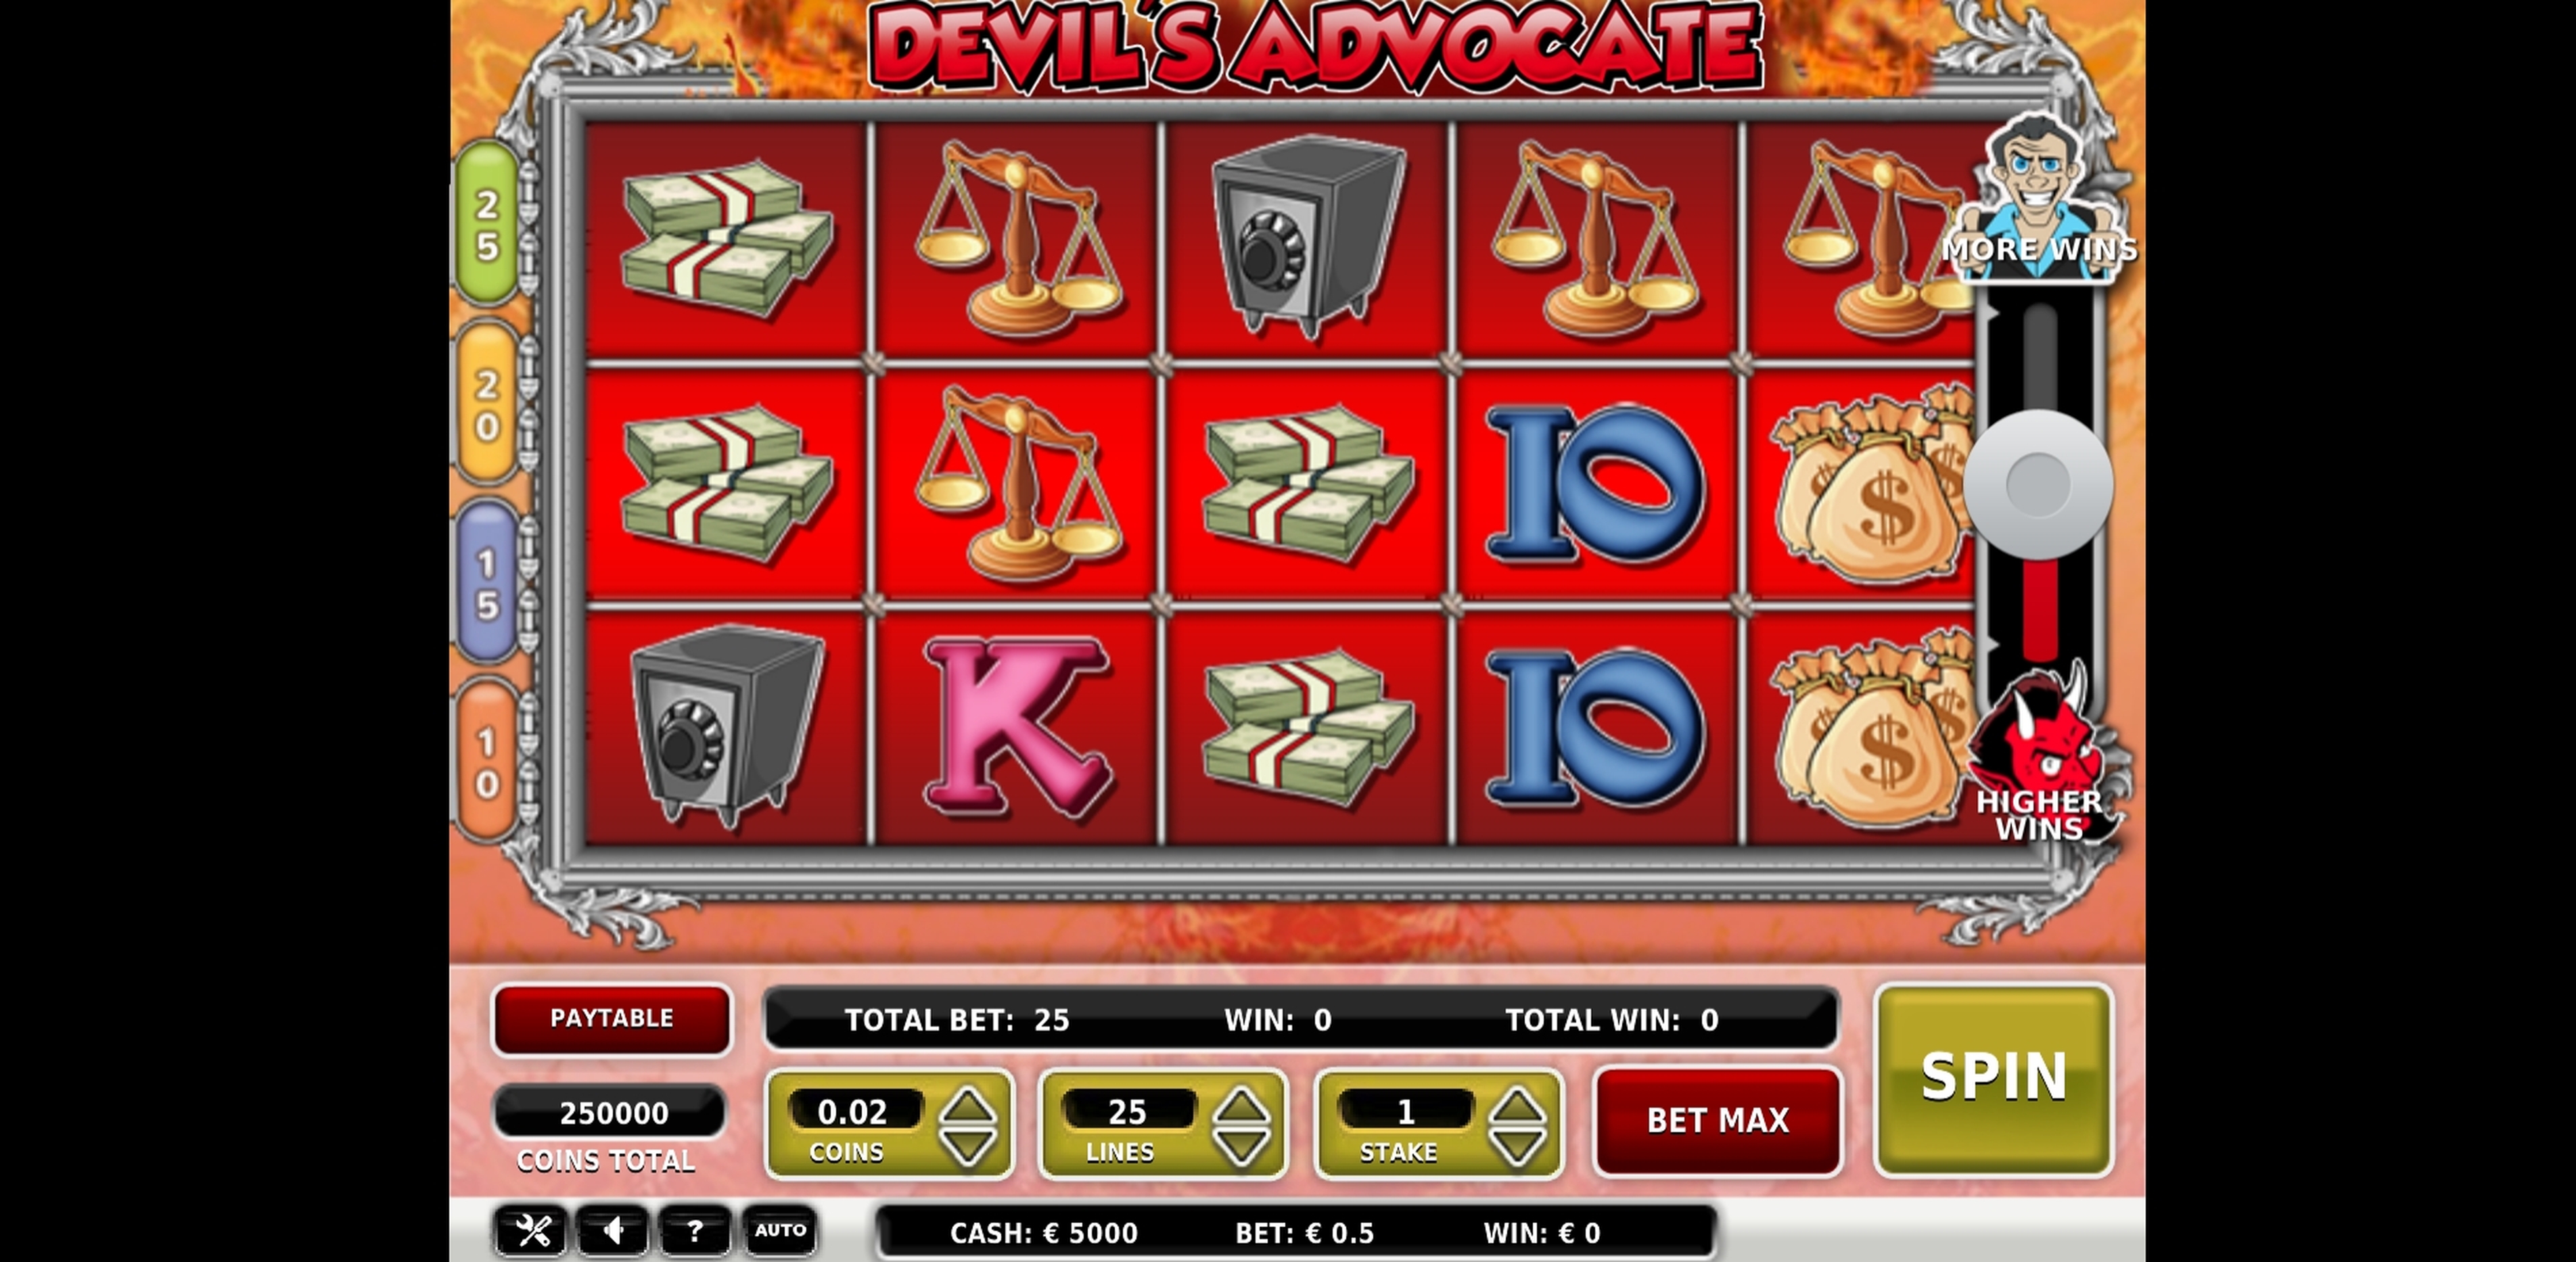 Devil's Advocate demo